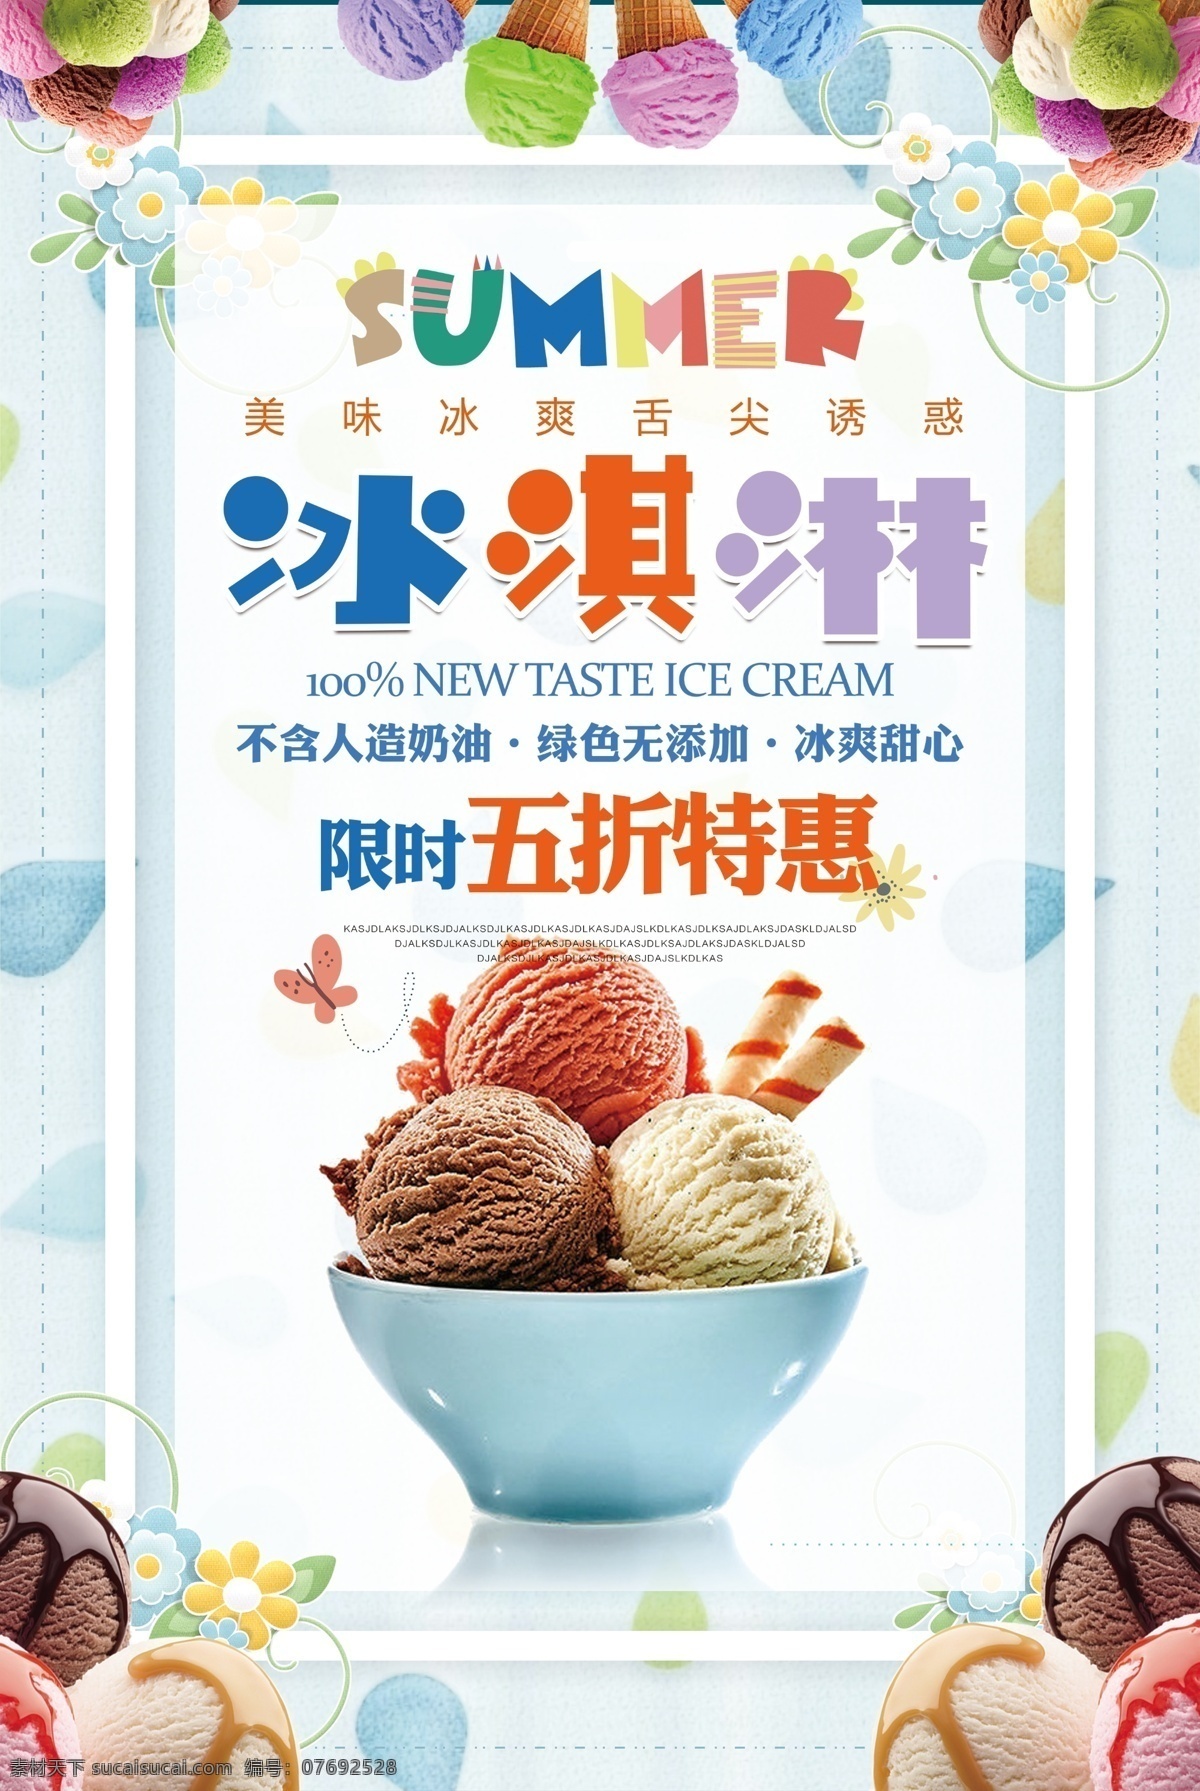 冰激凌 冰淇淋 冷饮 夏日饮品 冷饮海报 冰糕 甜品 夏日甜品 海报